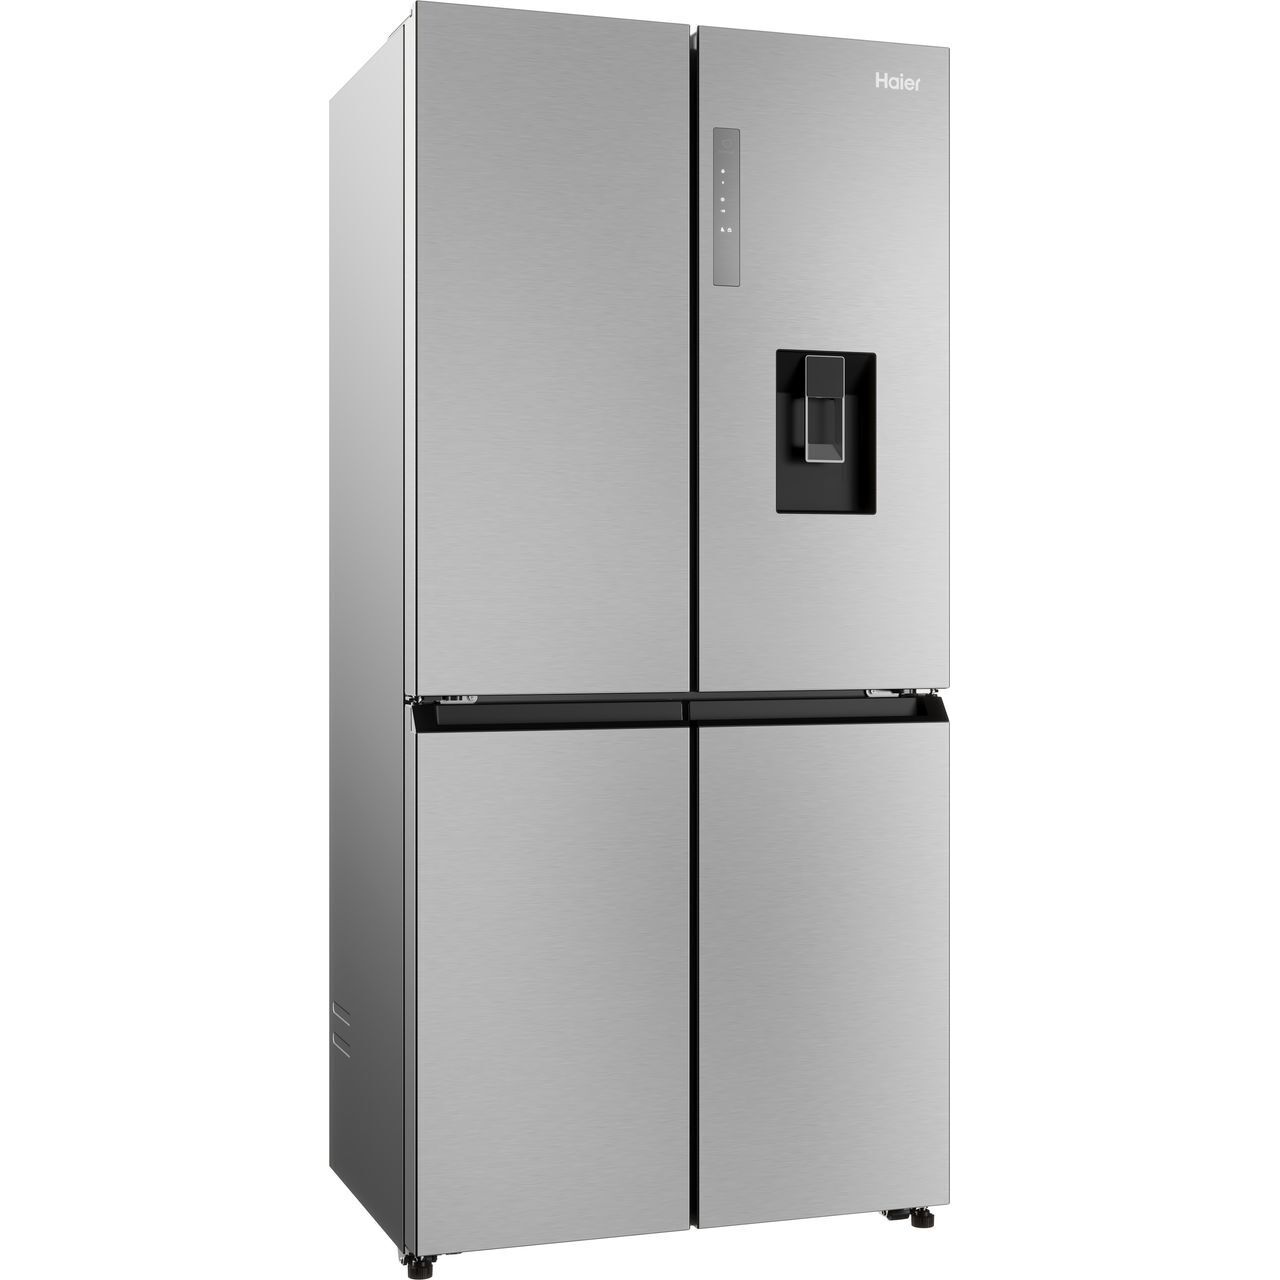 Haier HCR3818EWMM 83cm Four Door French Style Fridge Freezer With Non Plumbed Water Dispenser - PLATINUM INOX